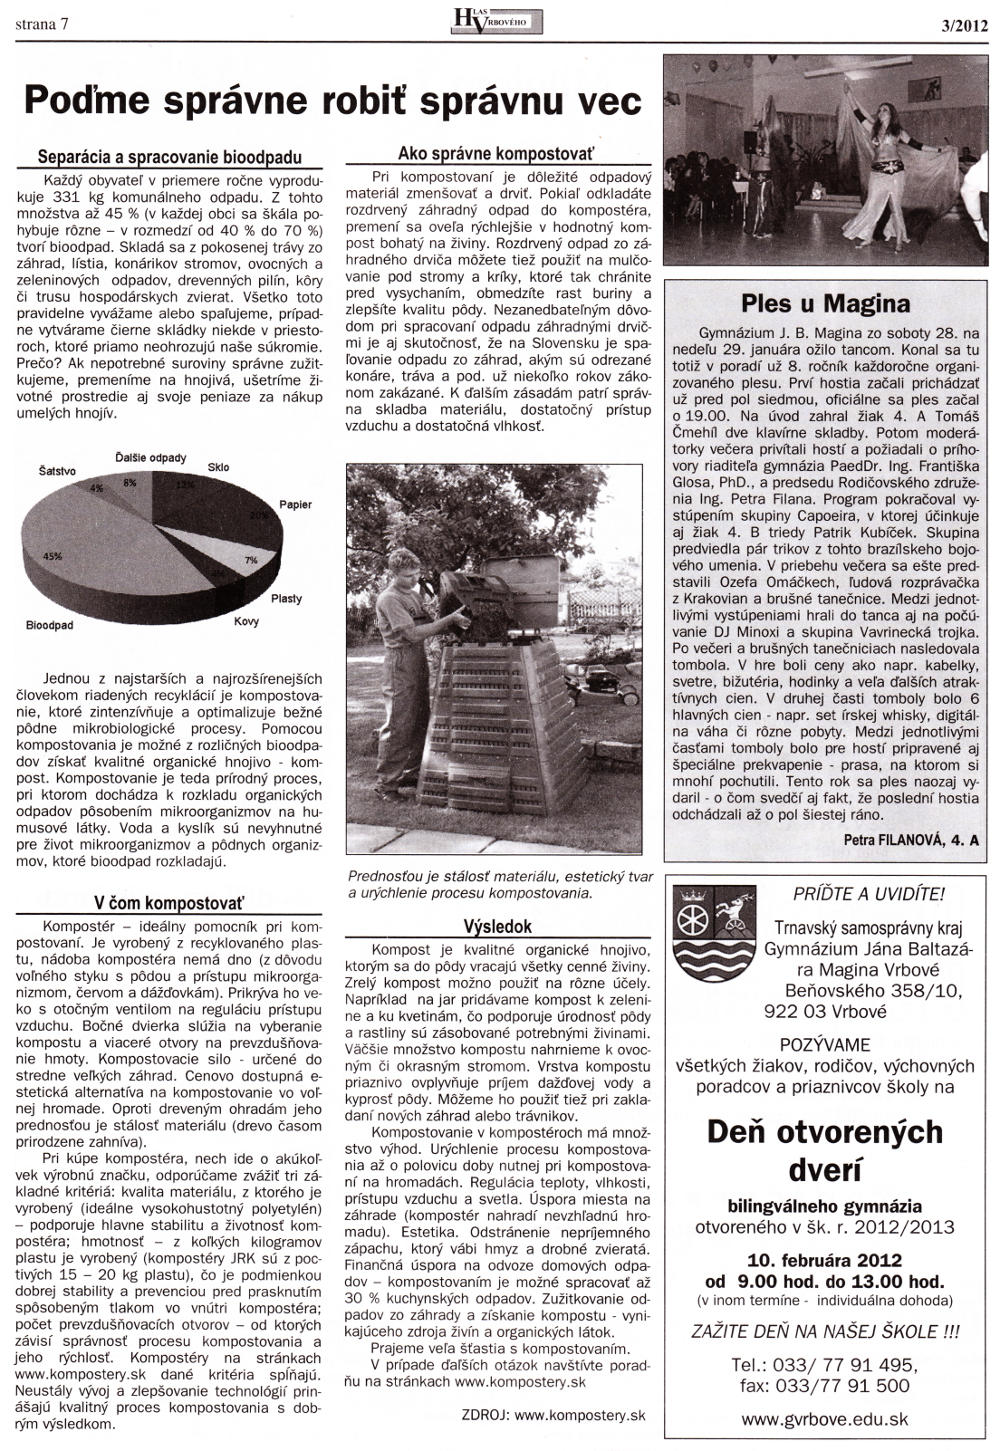 Hlas Vrbového 03/2012, strana 7